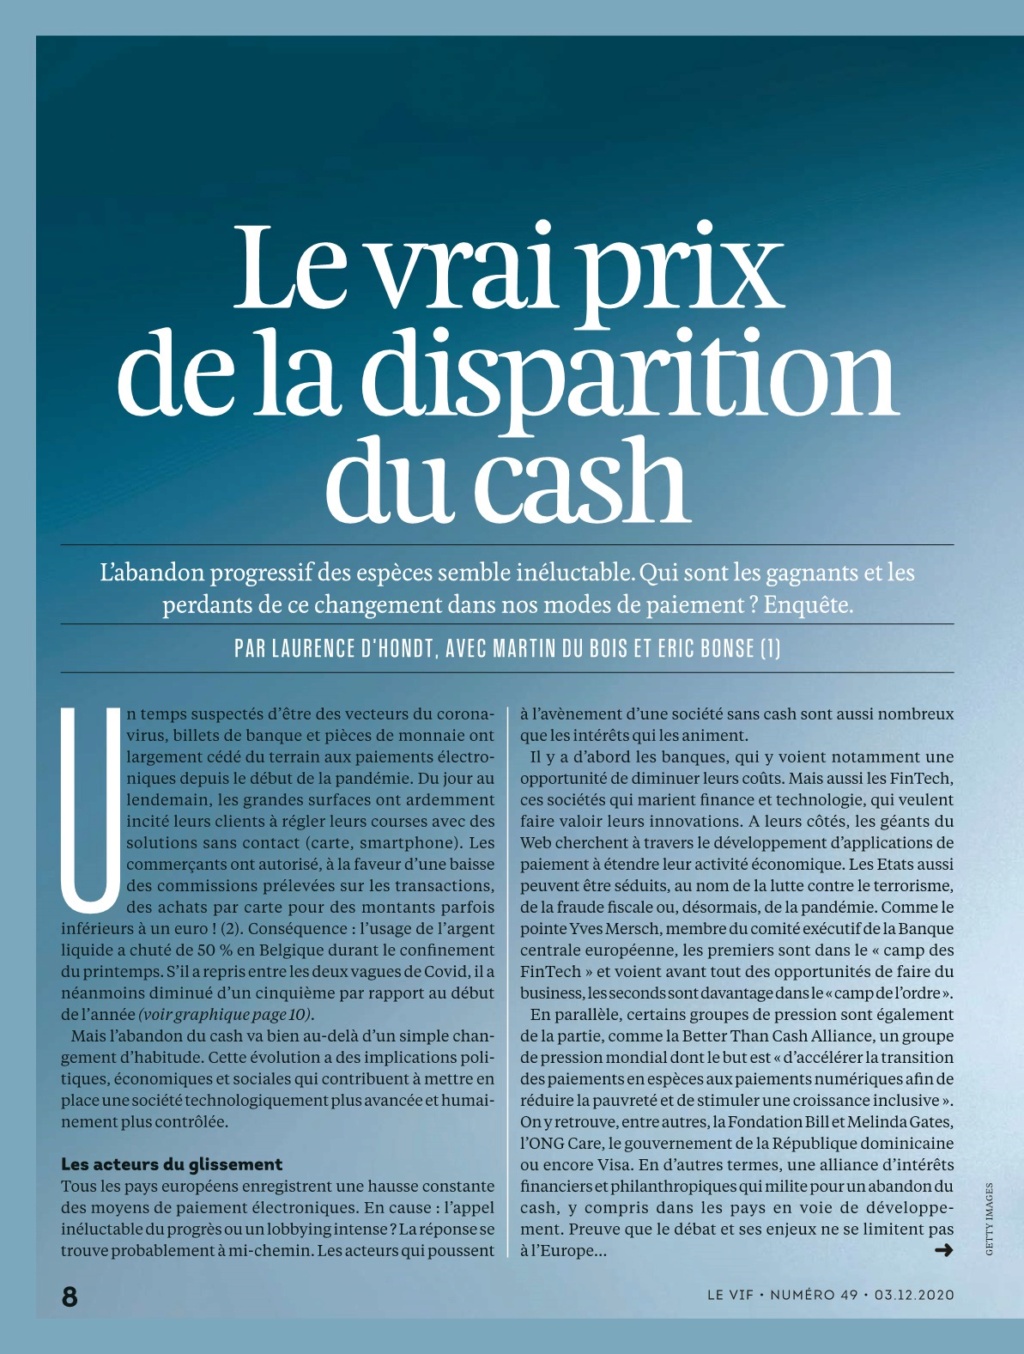 Le vif l'express du 3/12/2020  le vrai prix de la disparition du cash Le_vif11